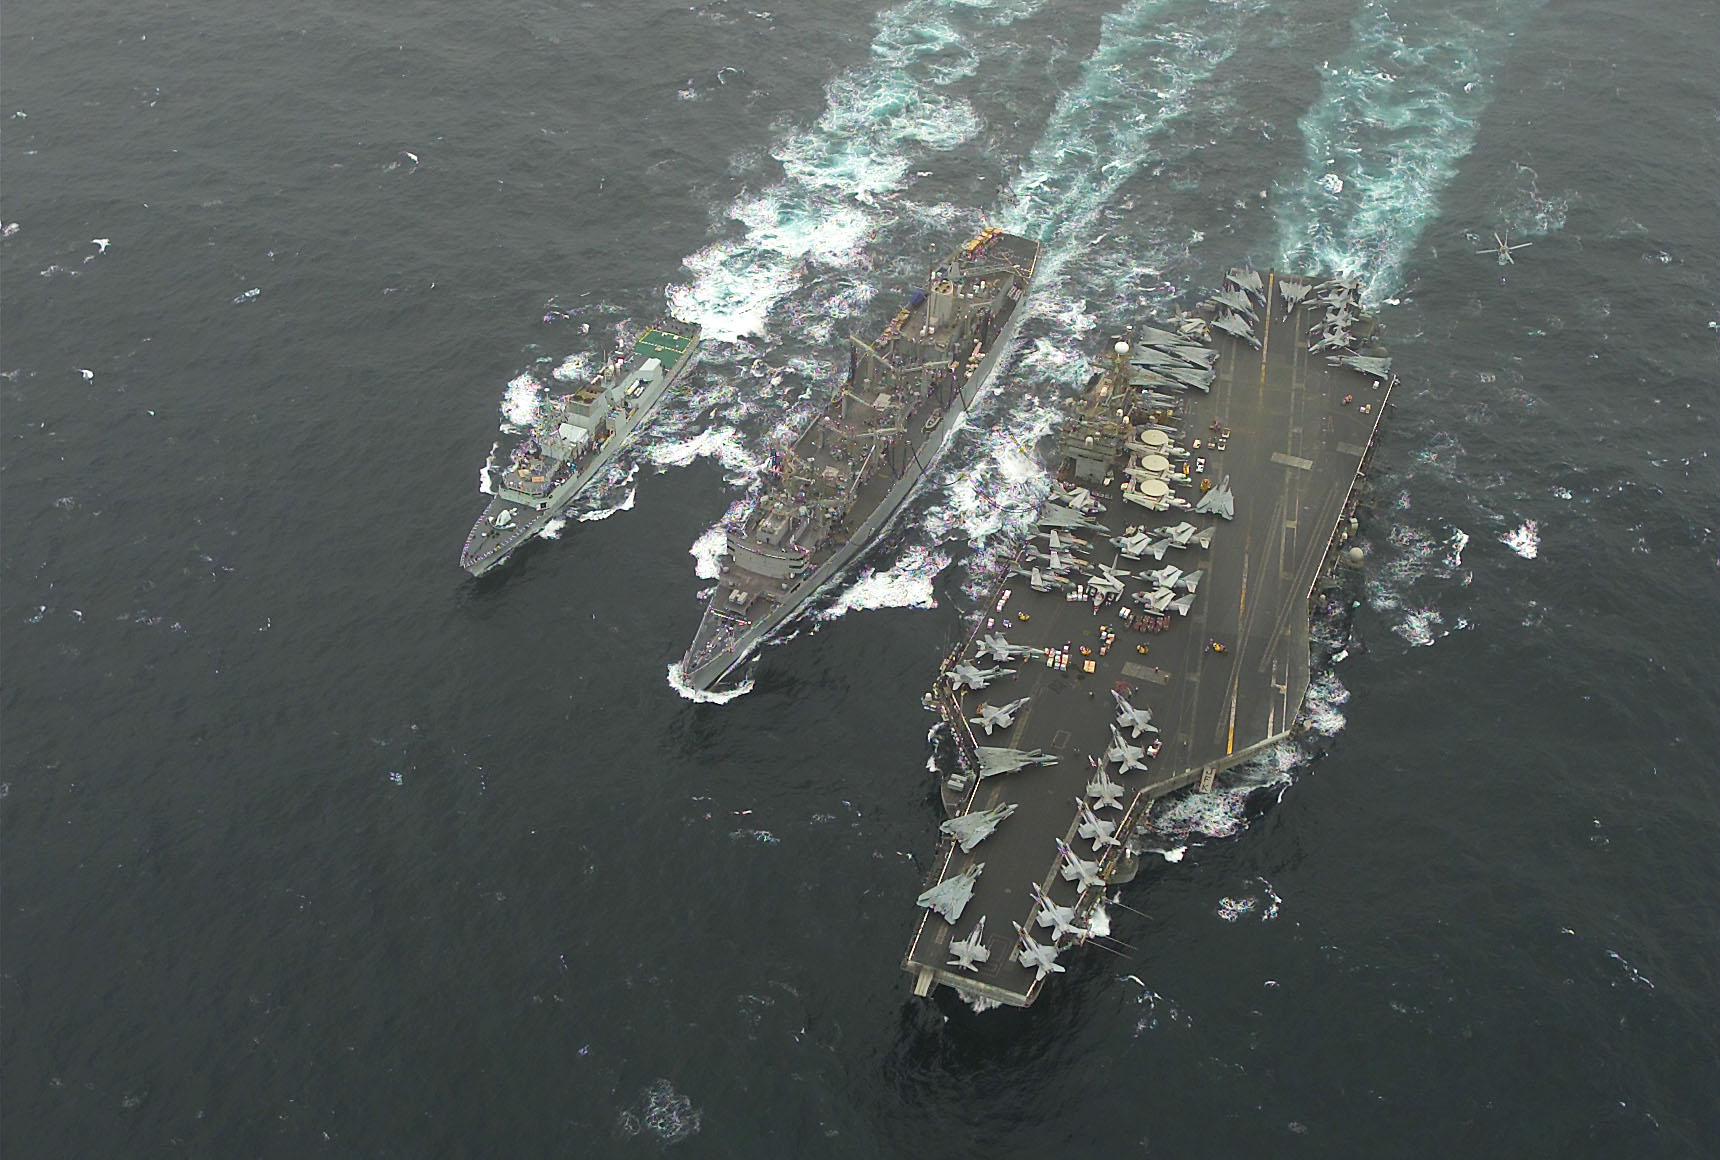 Canada's Warships - HMCS St. John's